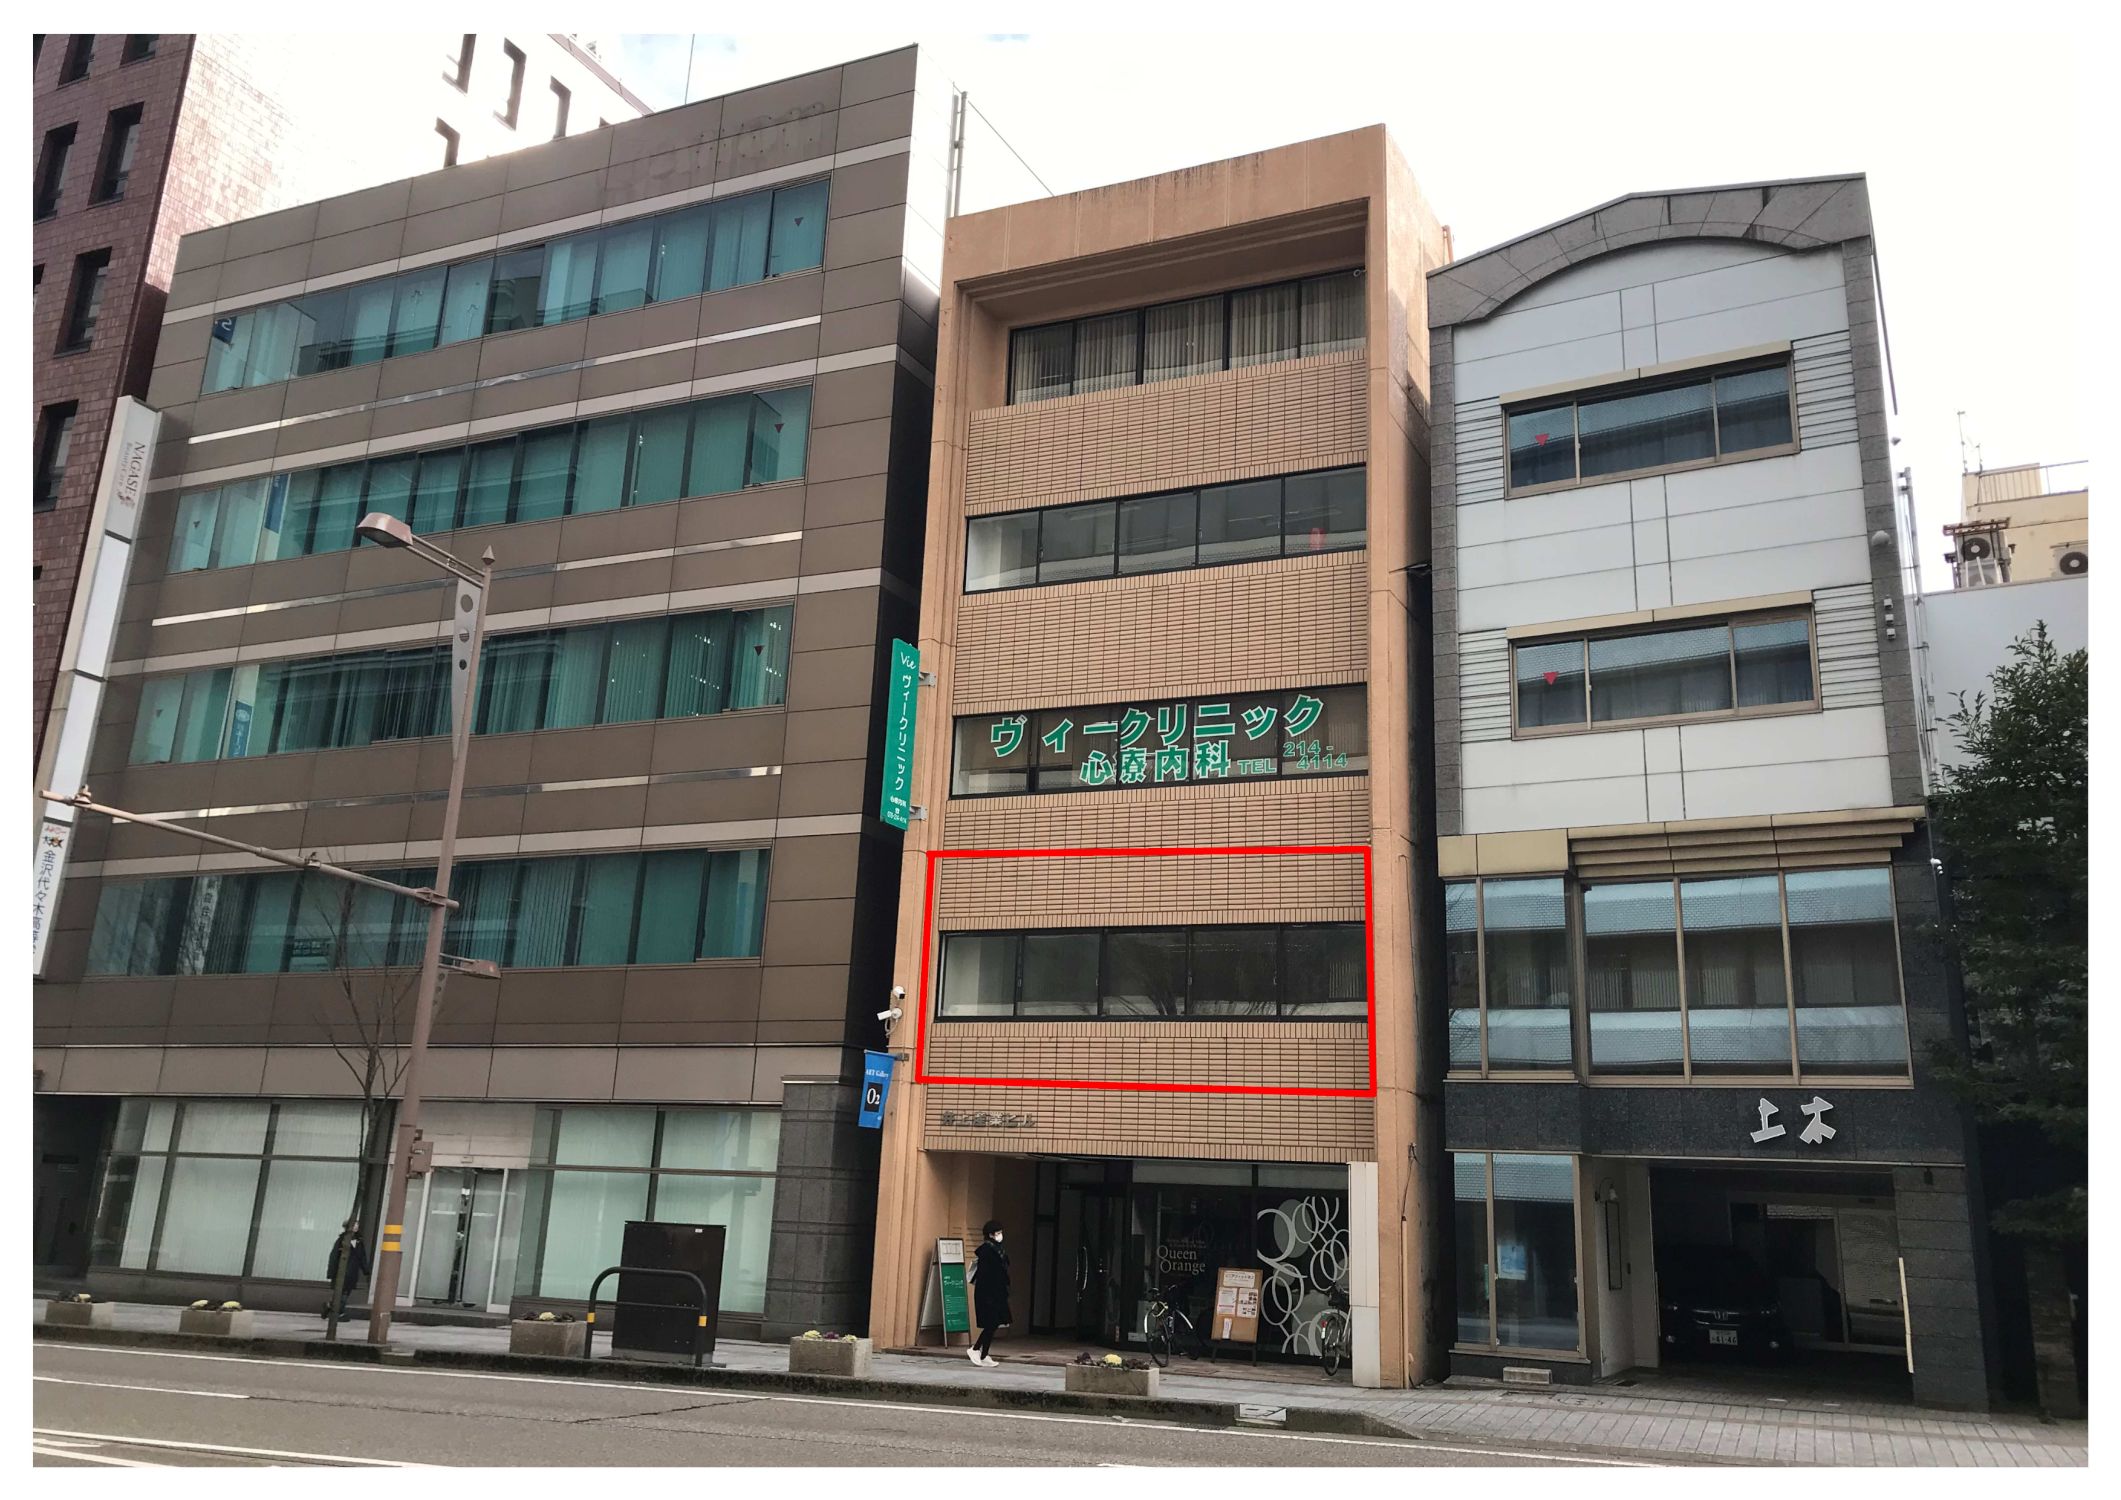 石川県金沢市南町に貸事務所店舗物件が新着しました。